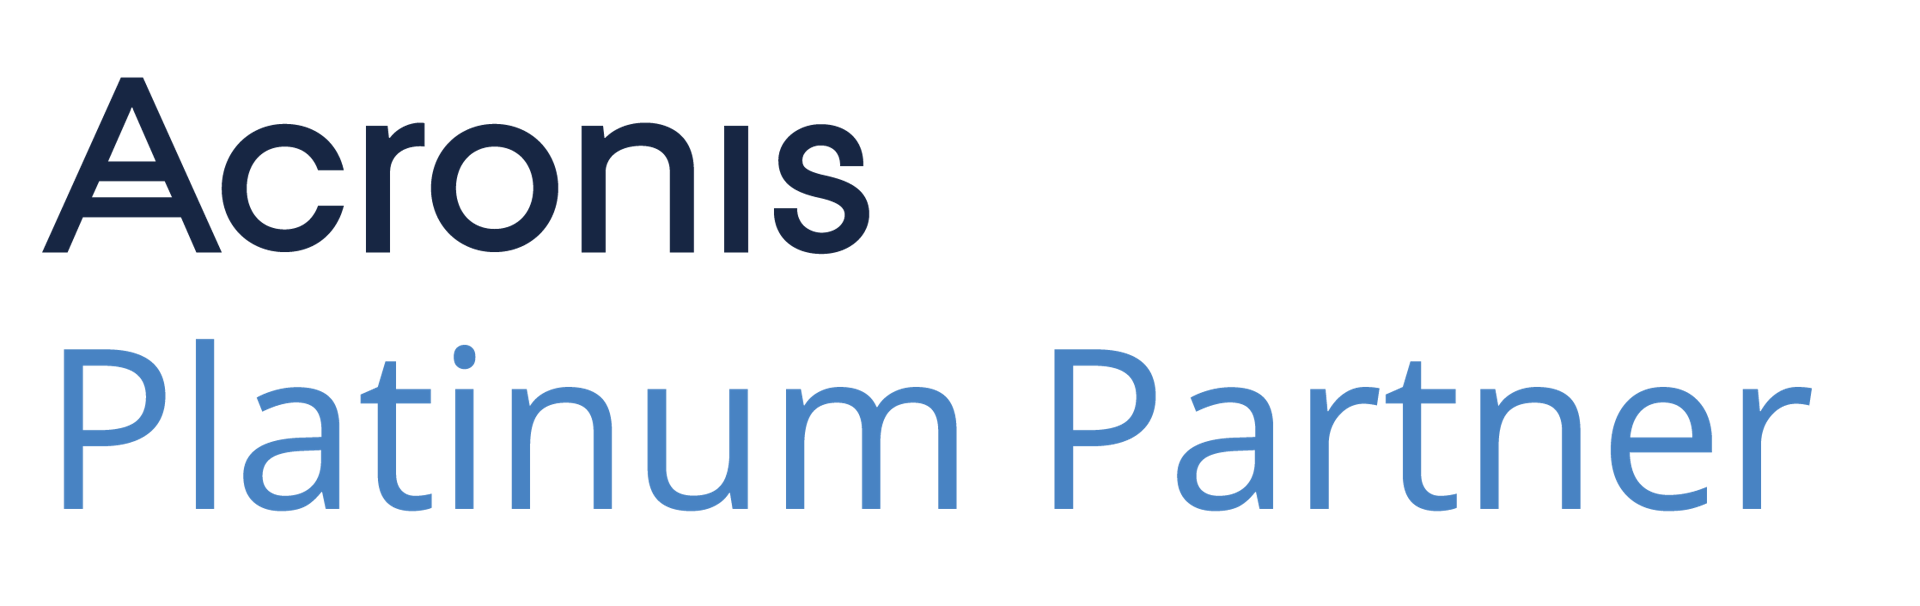 acronis-platinum_partner_logo_2